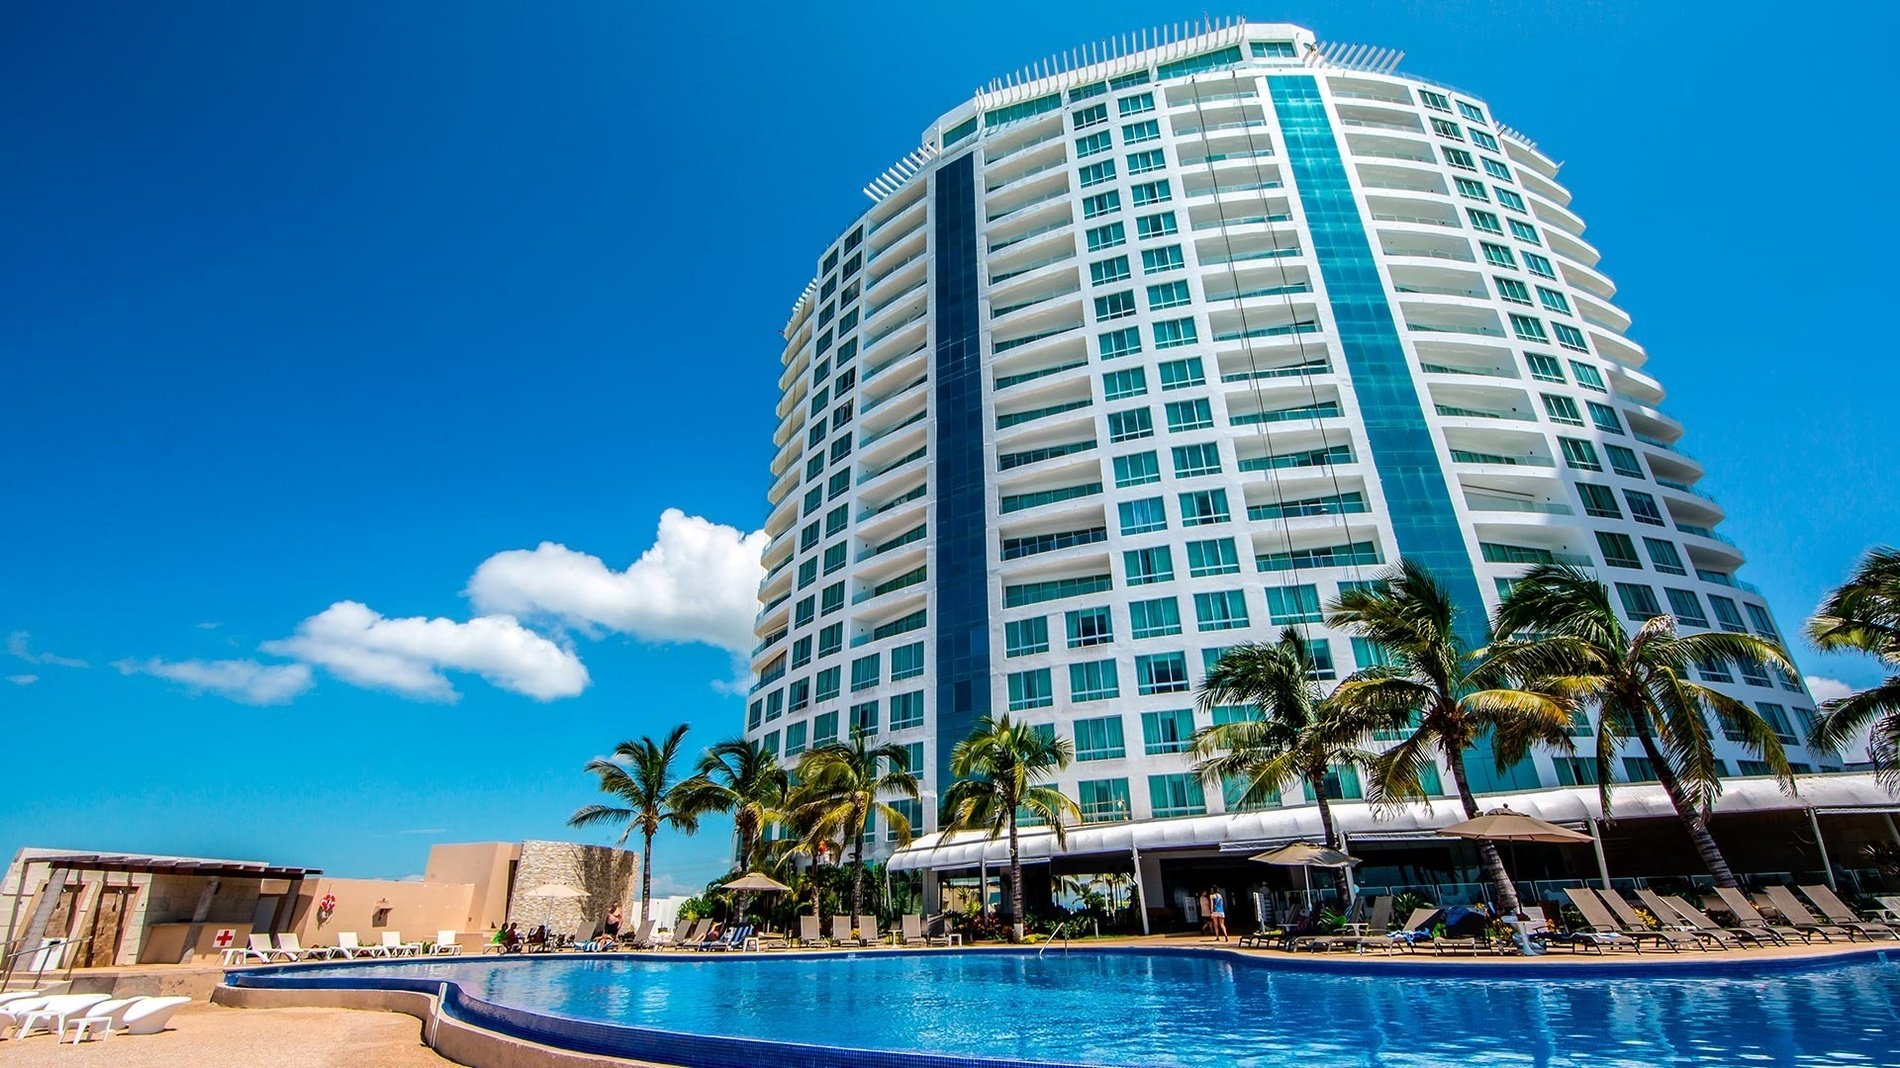 Vista panorâmica do hotel Park Royal Beach Mazatlan no México